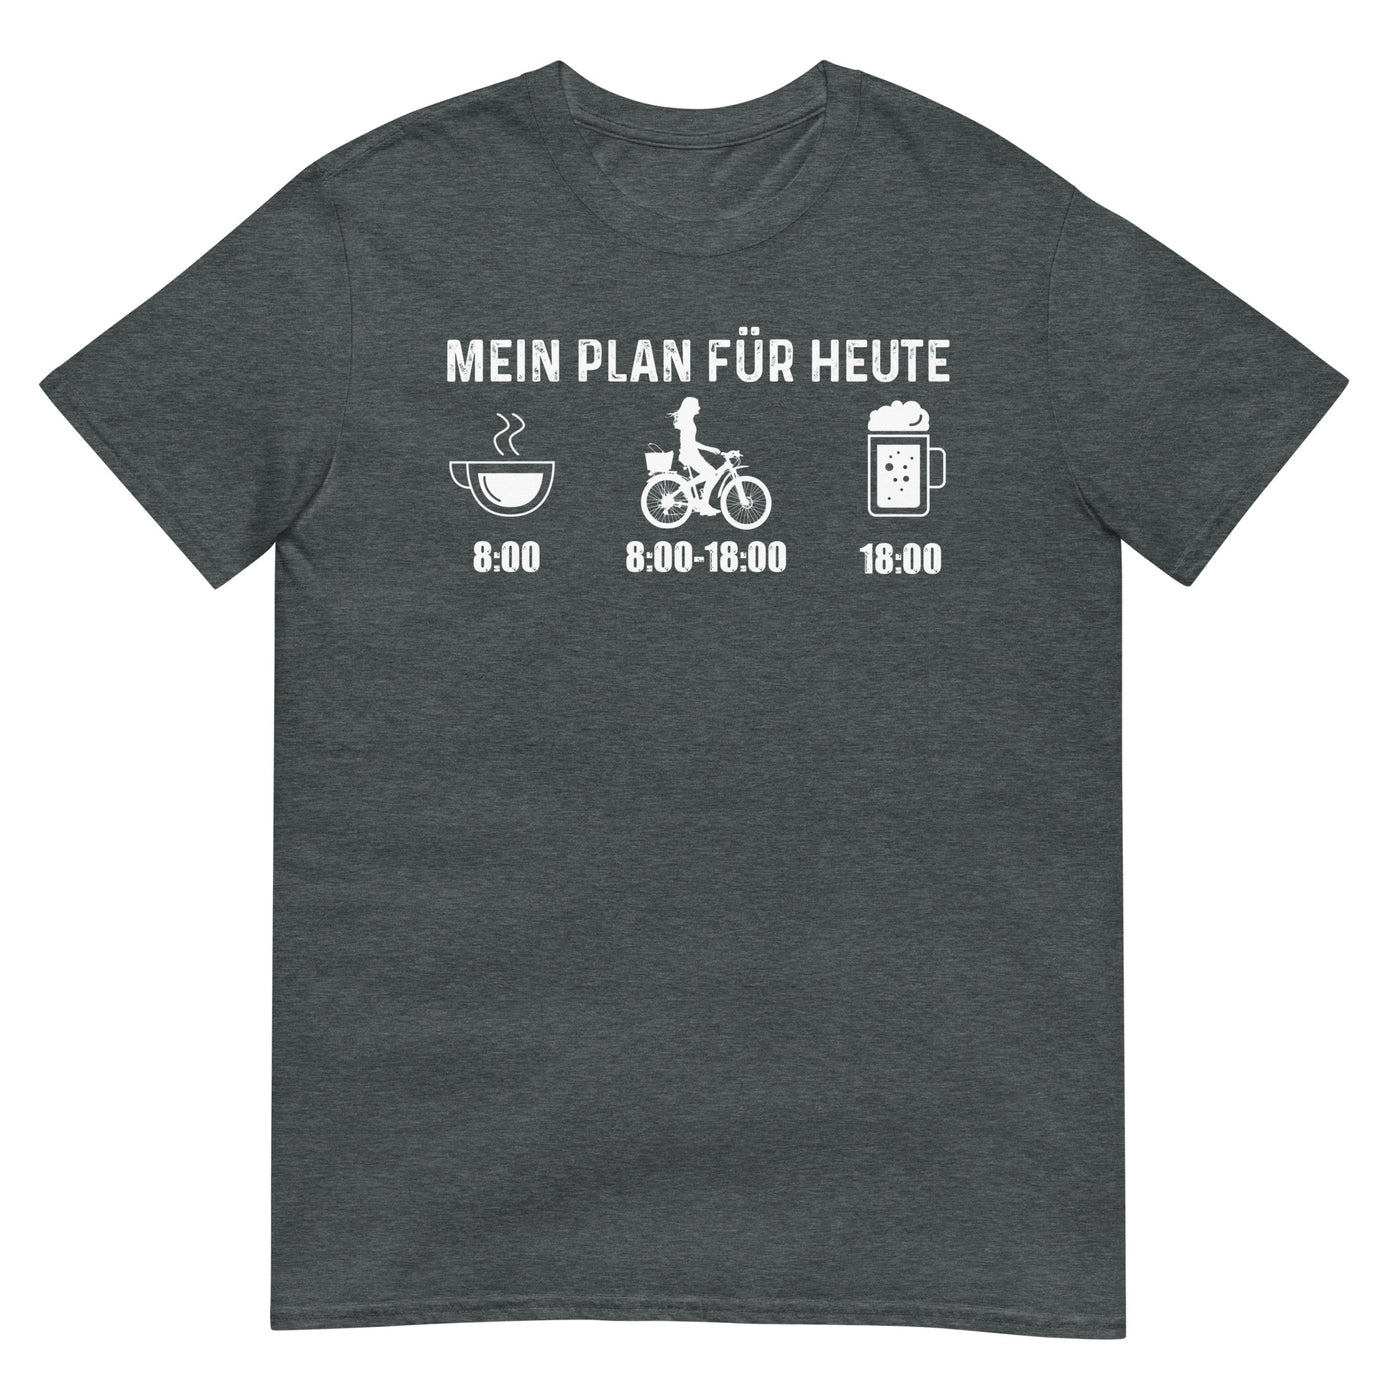 Mein Plan Für Heute 2 - T-Shirt (Unisex) fahrrad xxx yyy zzz Dark Heather